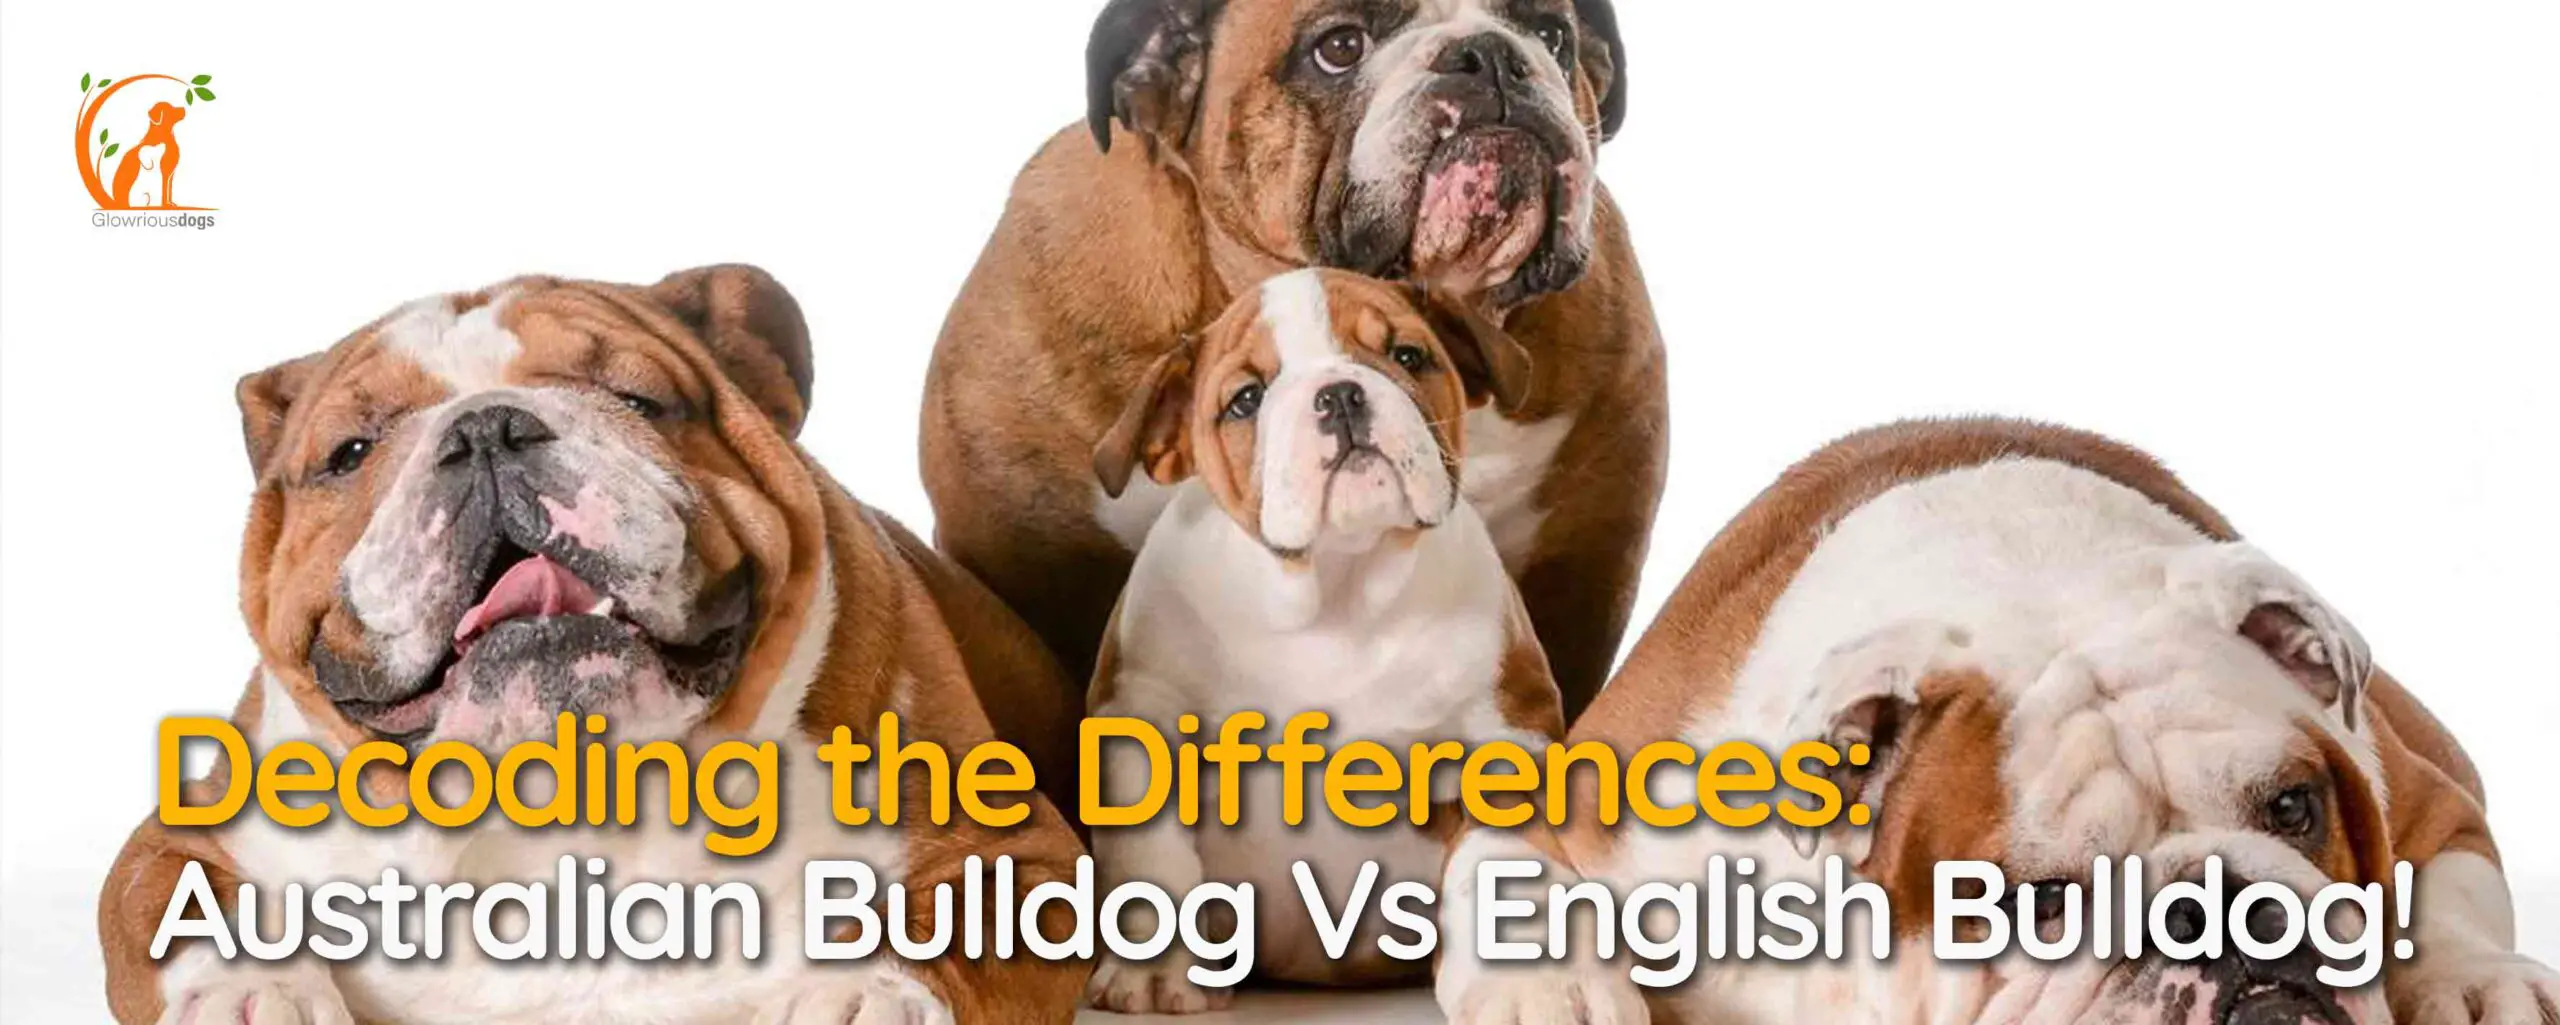 Decoding the Differences: Australian Bulldog Vs English Bulldog!